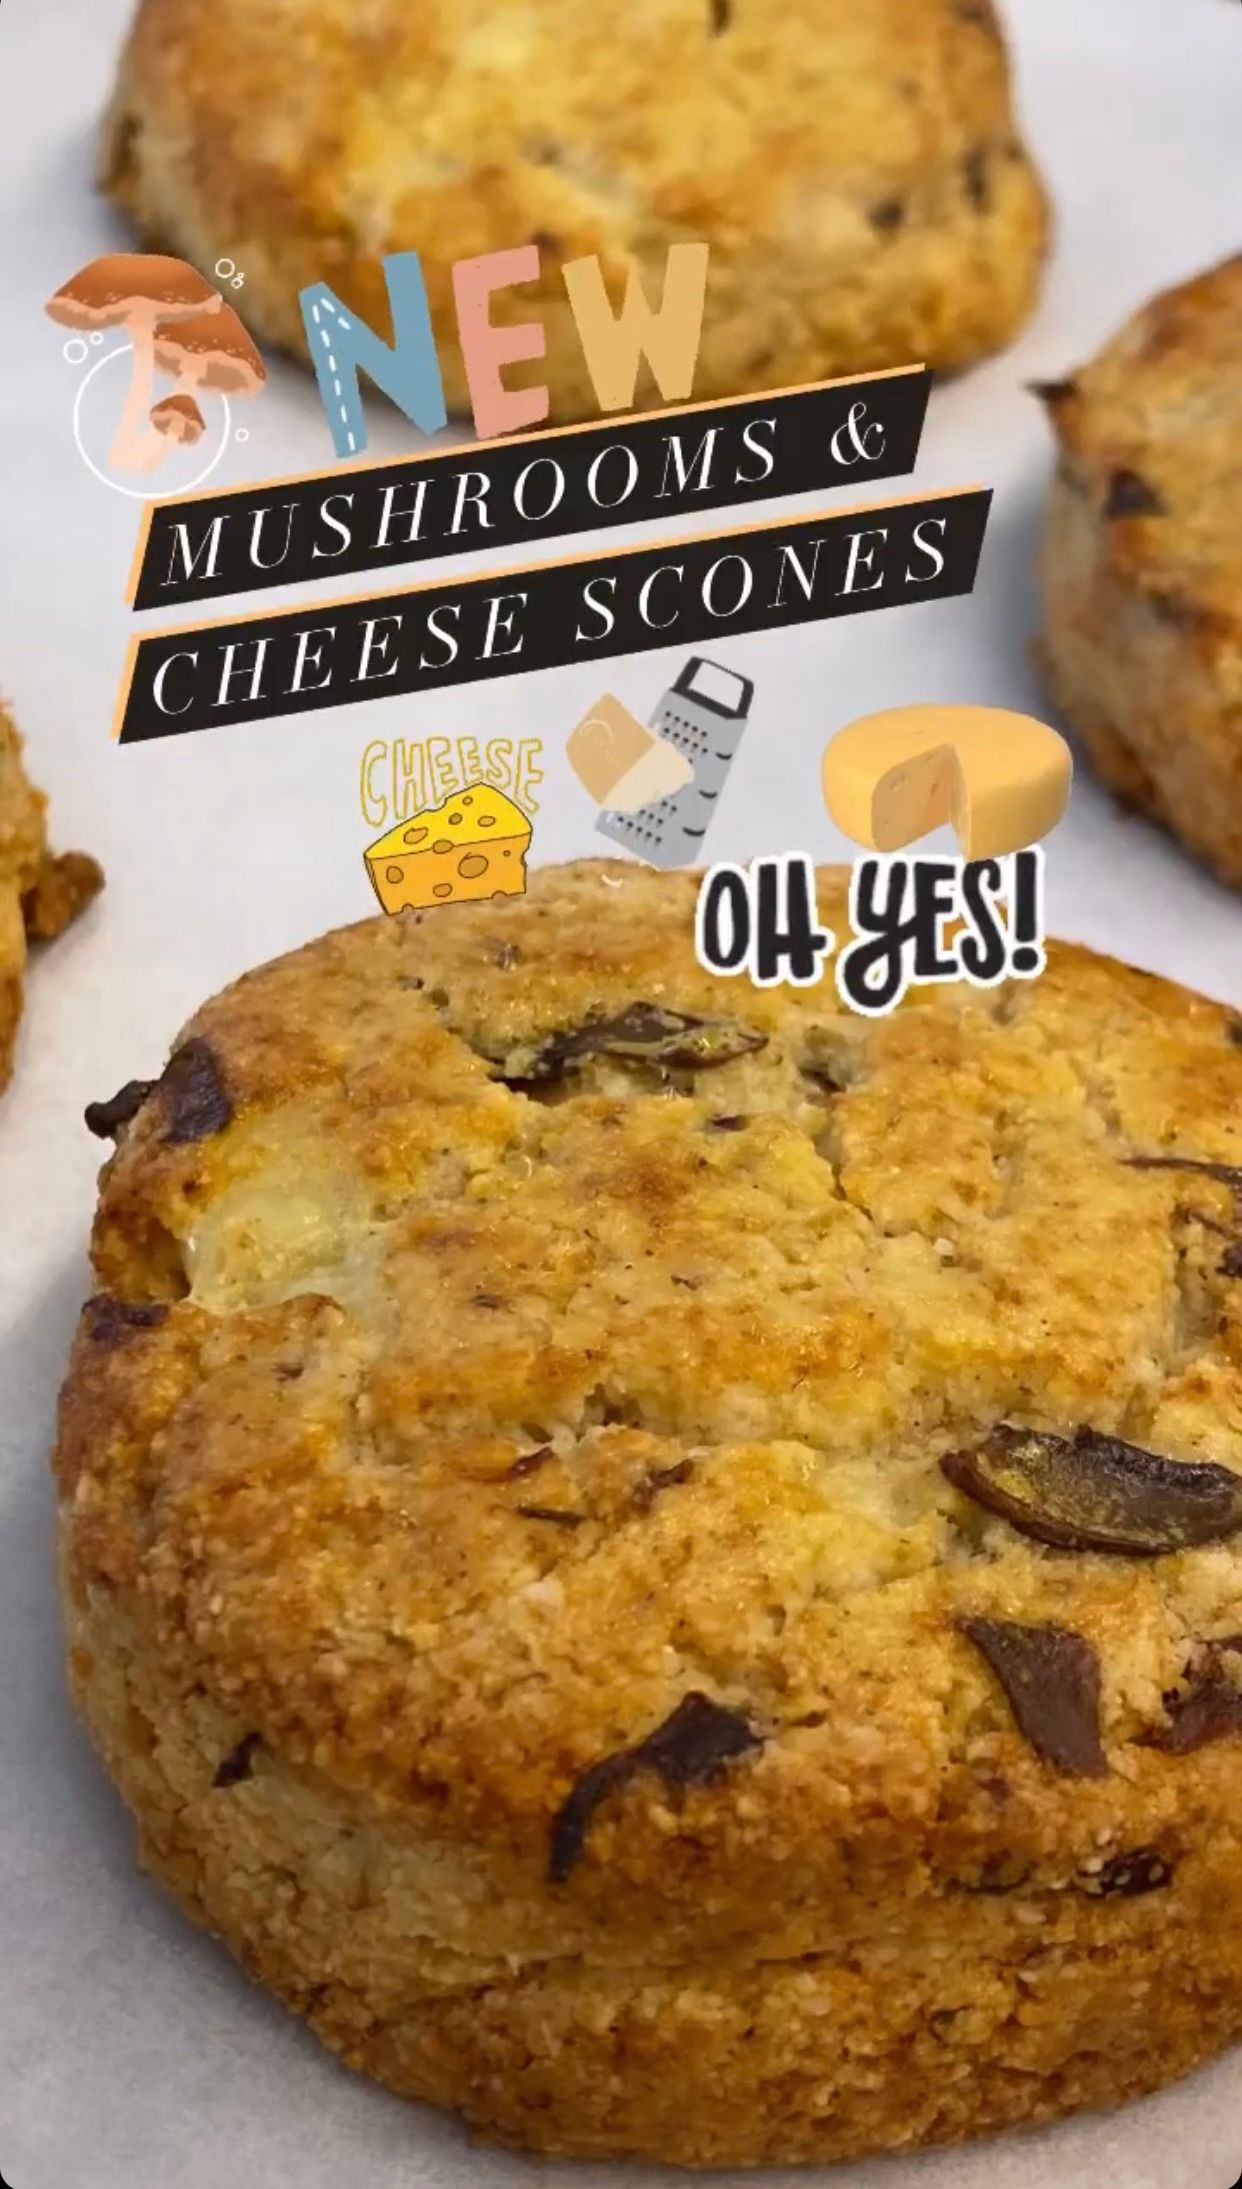 Mushroom & Cheese Scones 6pcs